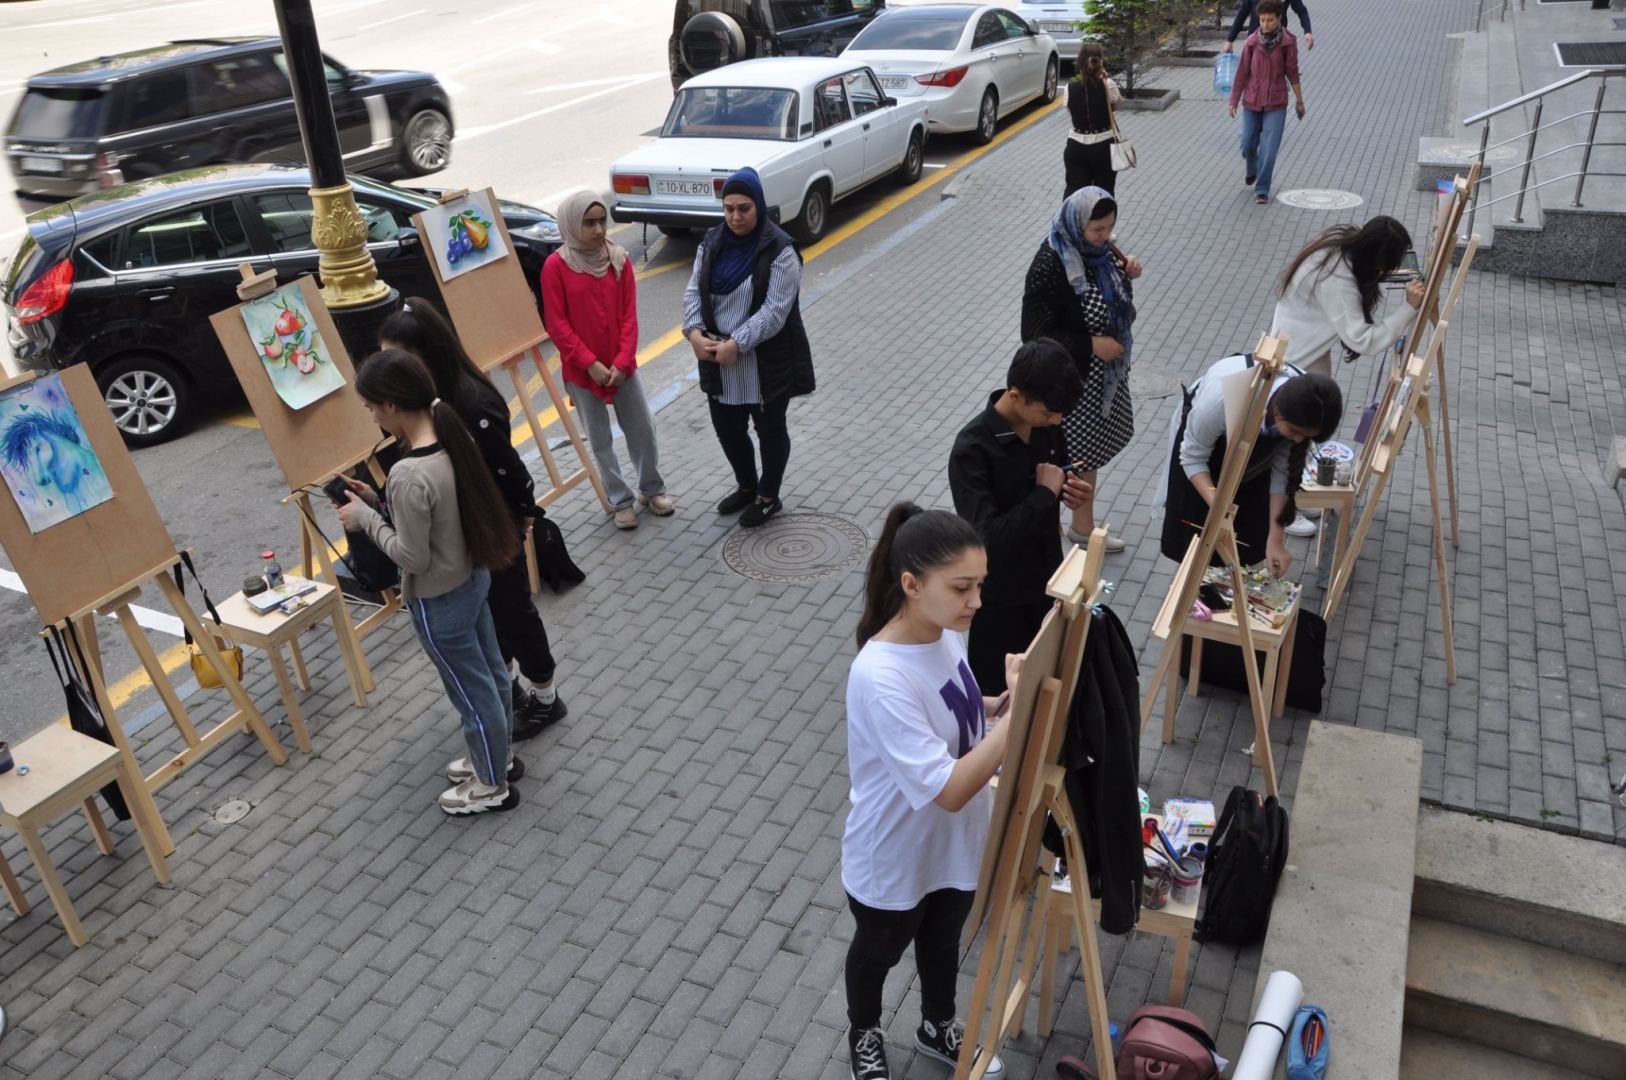 Пешеходный тротуар одной из улиц Баку украсили картинами (ФОТО)